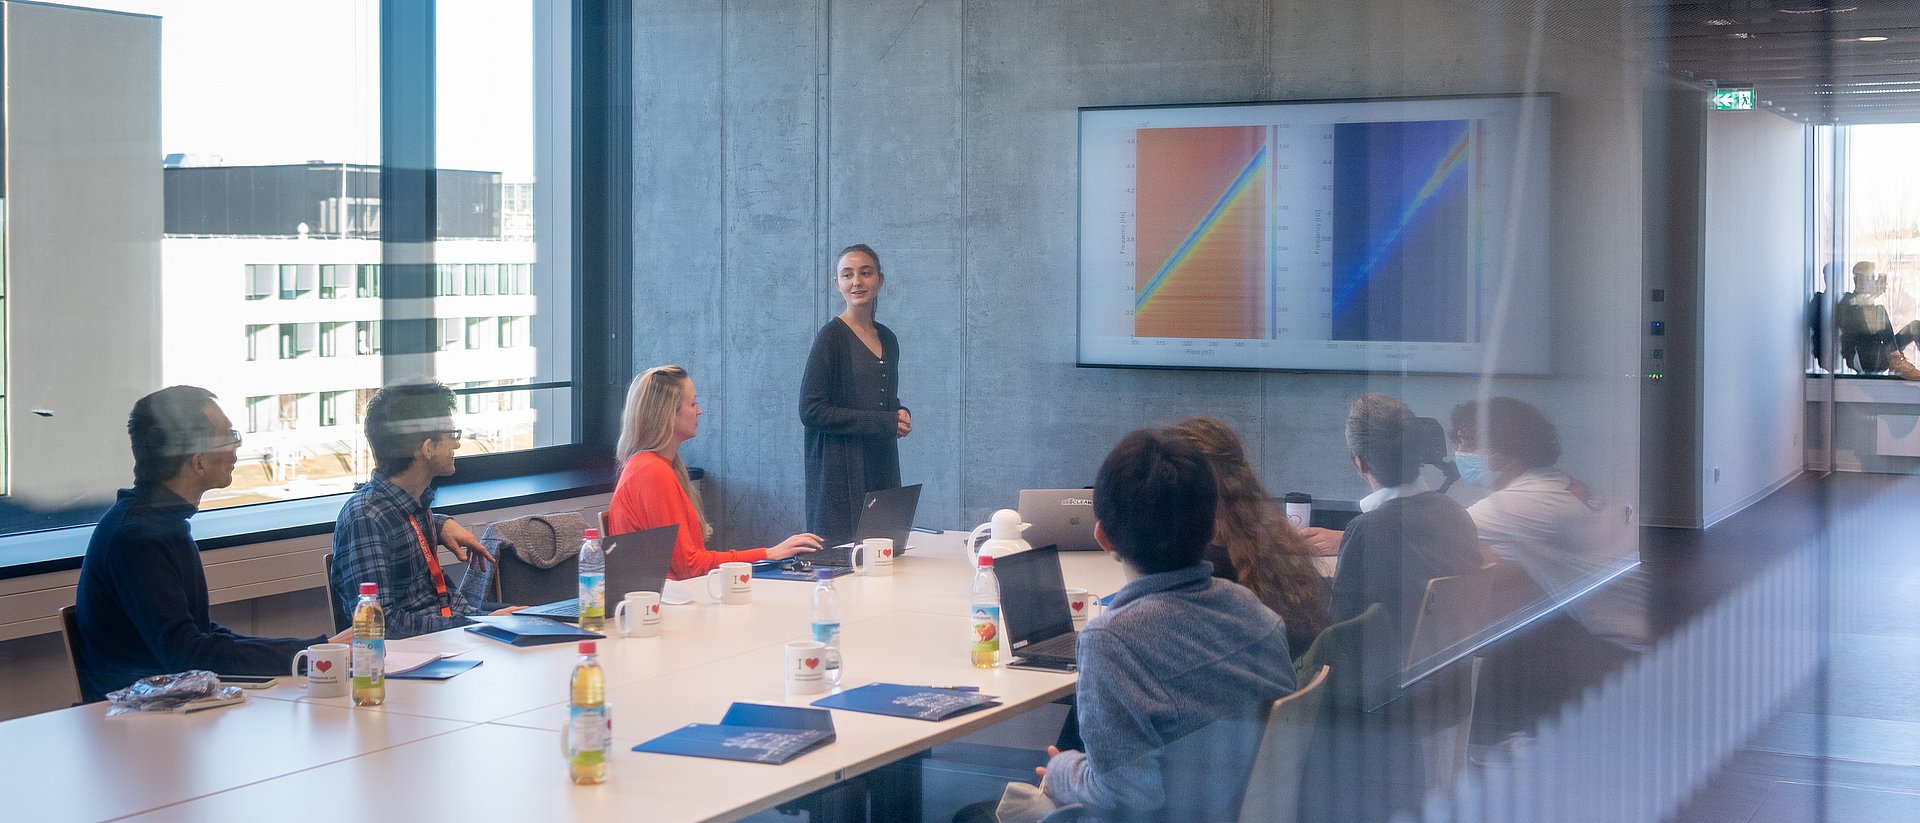 Eine Frau führt in einem durch eine Glasscheibe fotografierten Seminarraum durch eine Präsentation. Sie steht an einem Konferenztisch, an dem 7 weitere Personen sitzen. An die Wand ist eine Grafik projiziert.